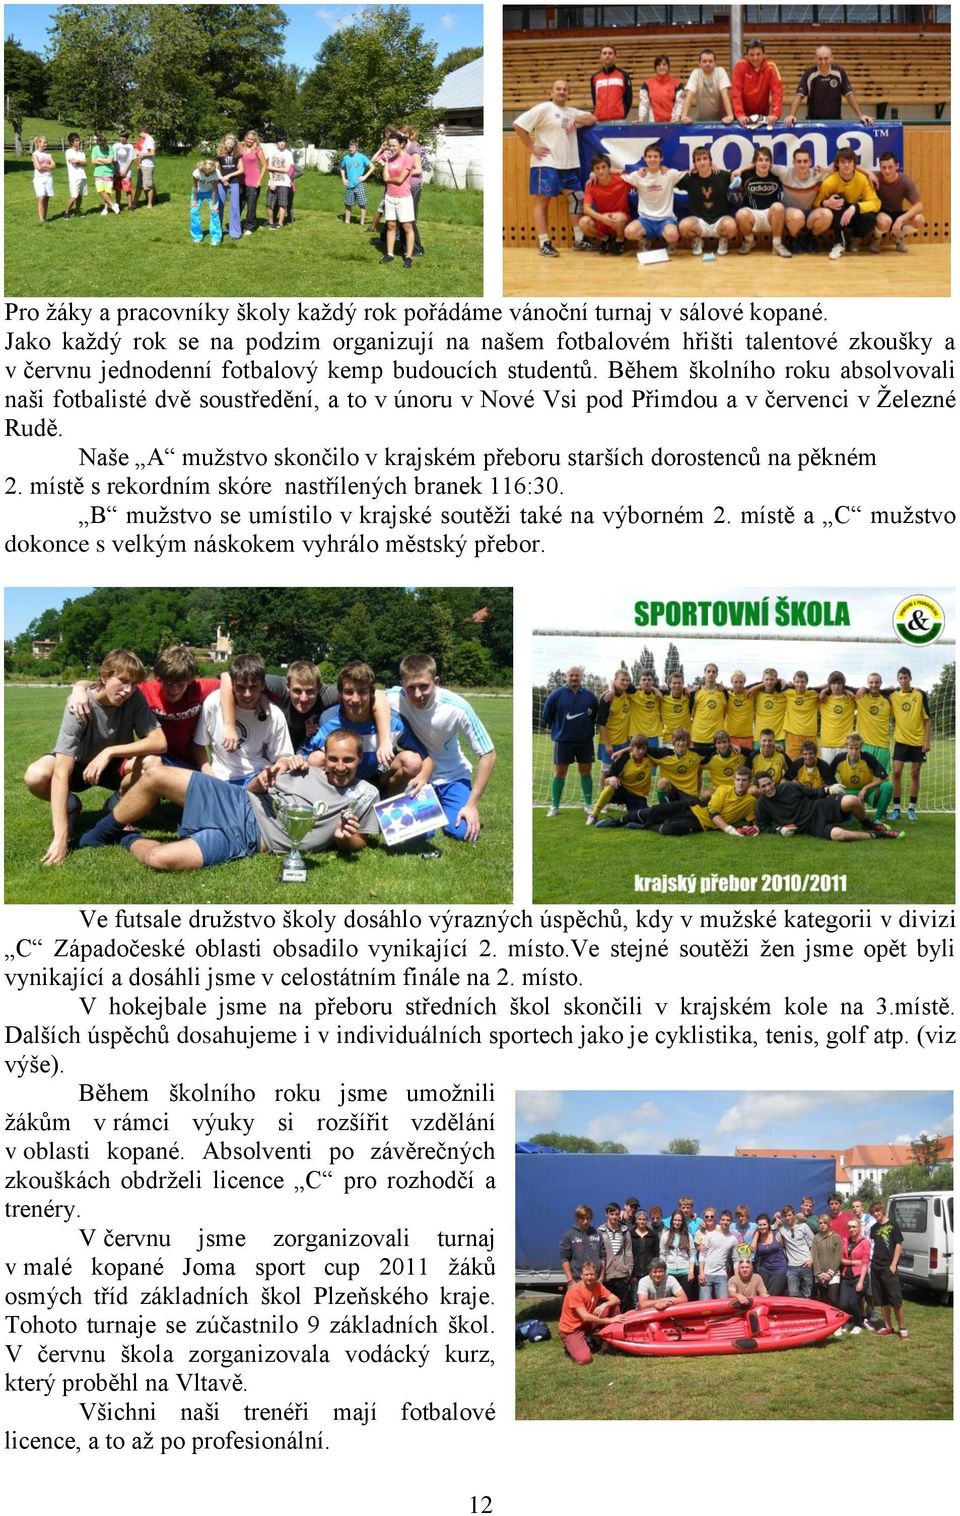 Během školního roku absolvovali naši fotbalisté dvě soustředění, a to v únoru v Nové Vsi pod Přimdou a v červenci v Ţelezné Rudě.